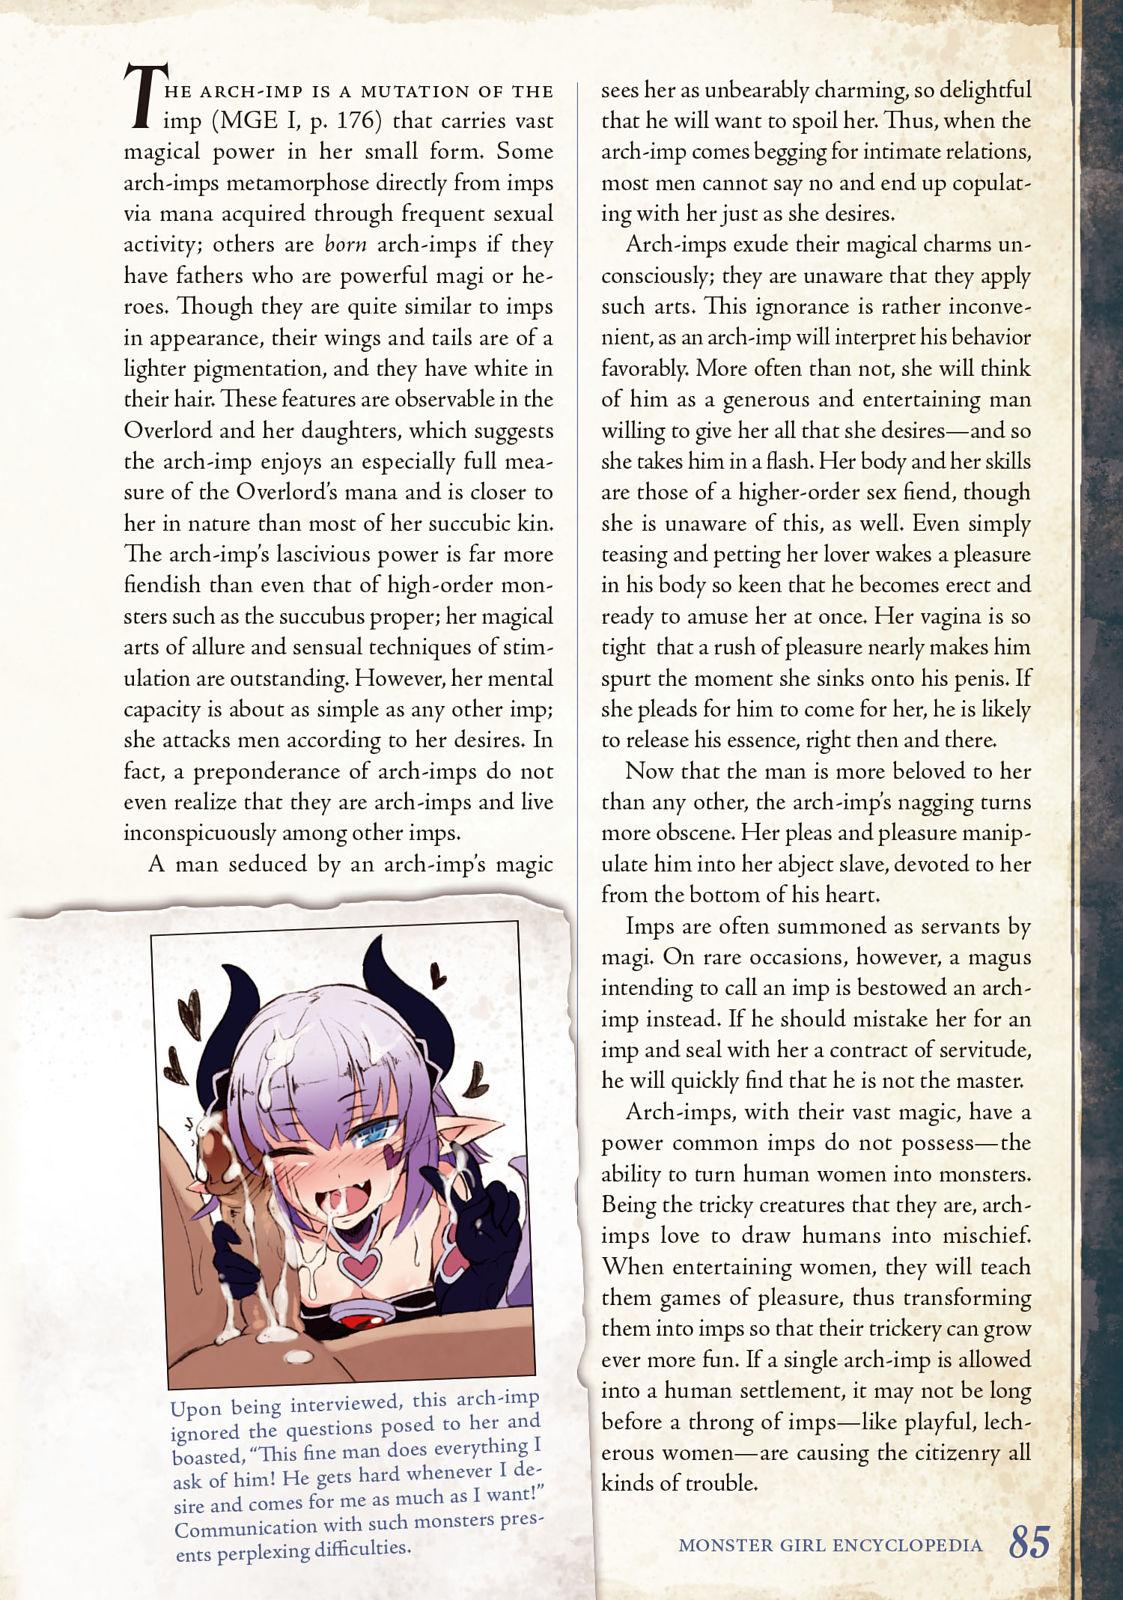 Monster Girl Encyclopedia Vol. 2 85